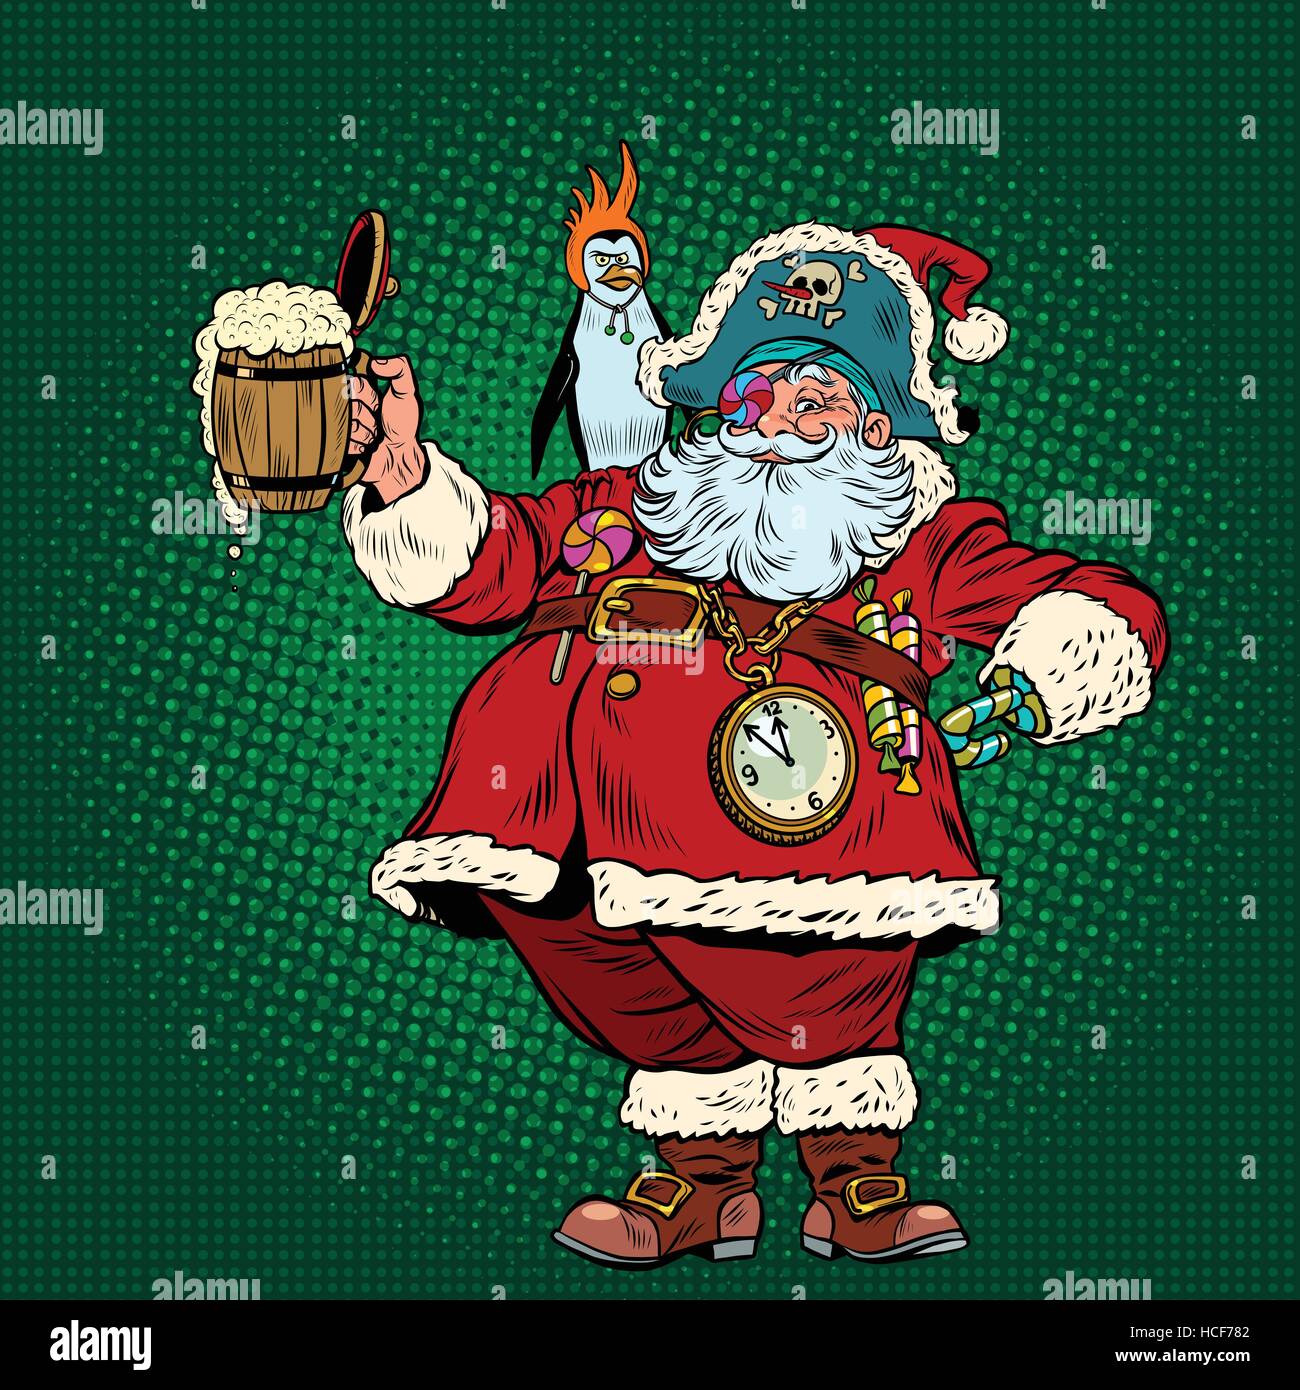 Santa Claus félicite St. Patricks day Illustration de Vecteur